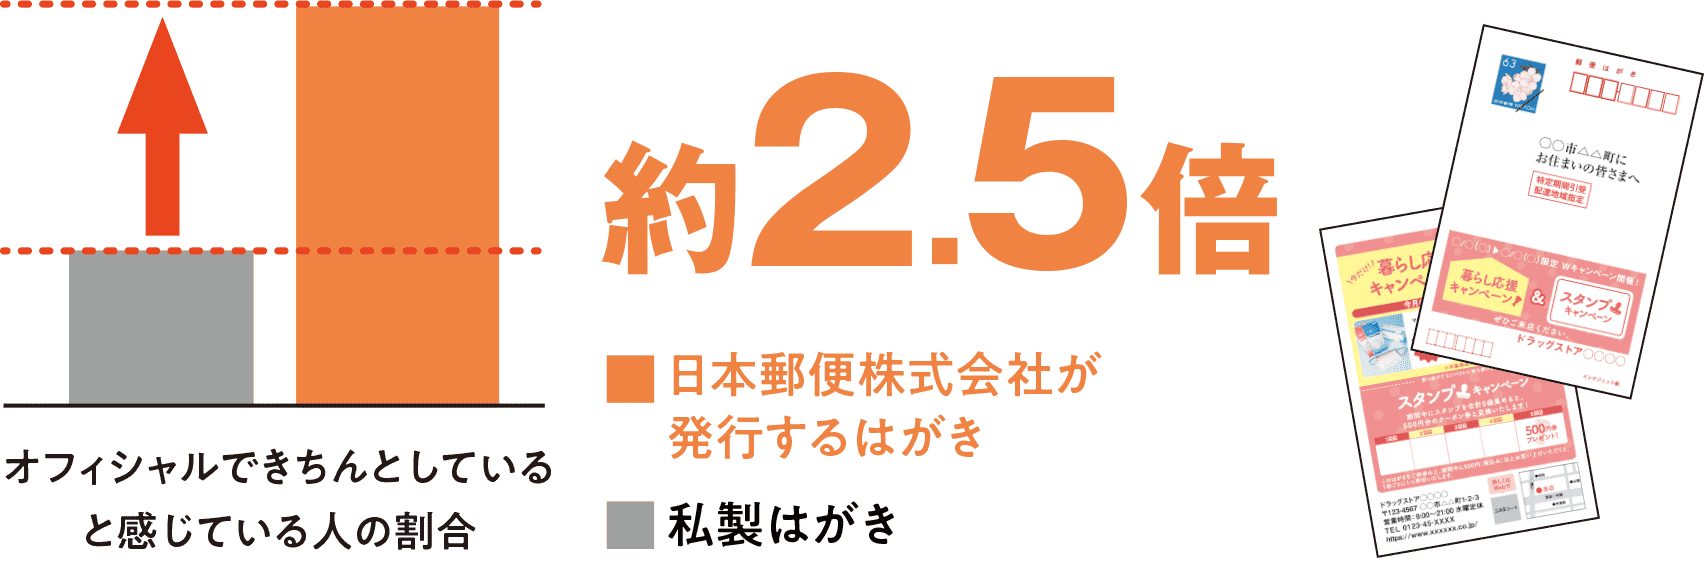 オフィシャルできちんとしていると感じている人の割合 日本郵便株式会社が発行するはがき 36.5% 私製はがき 20.5%